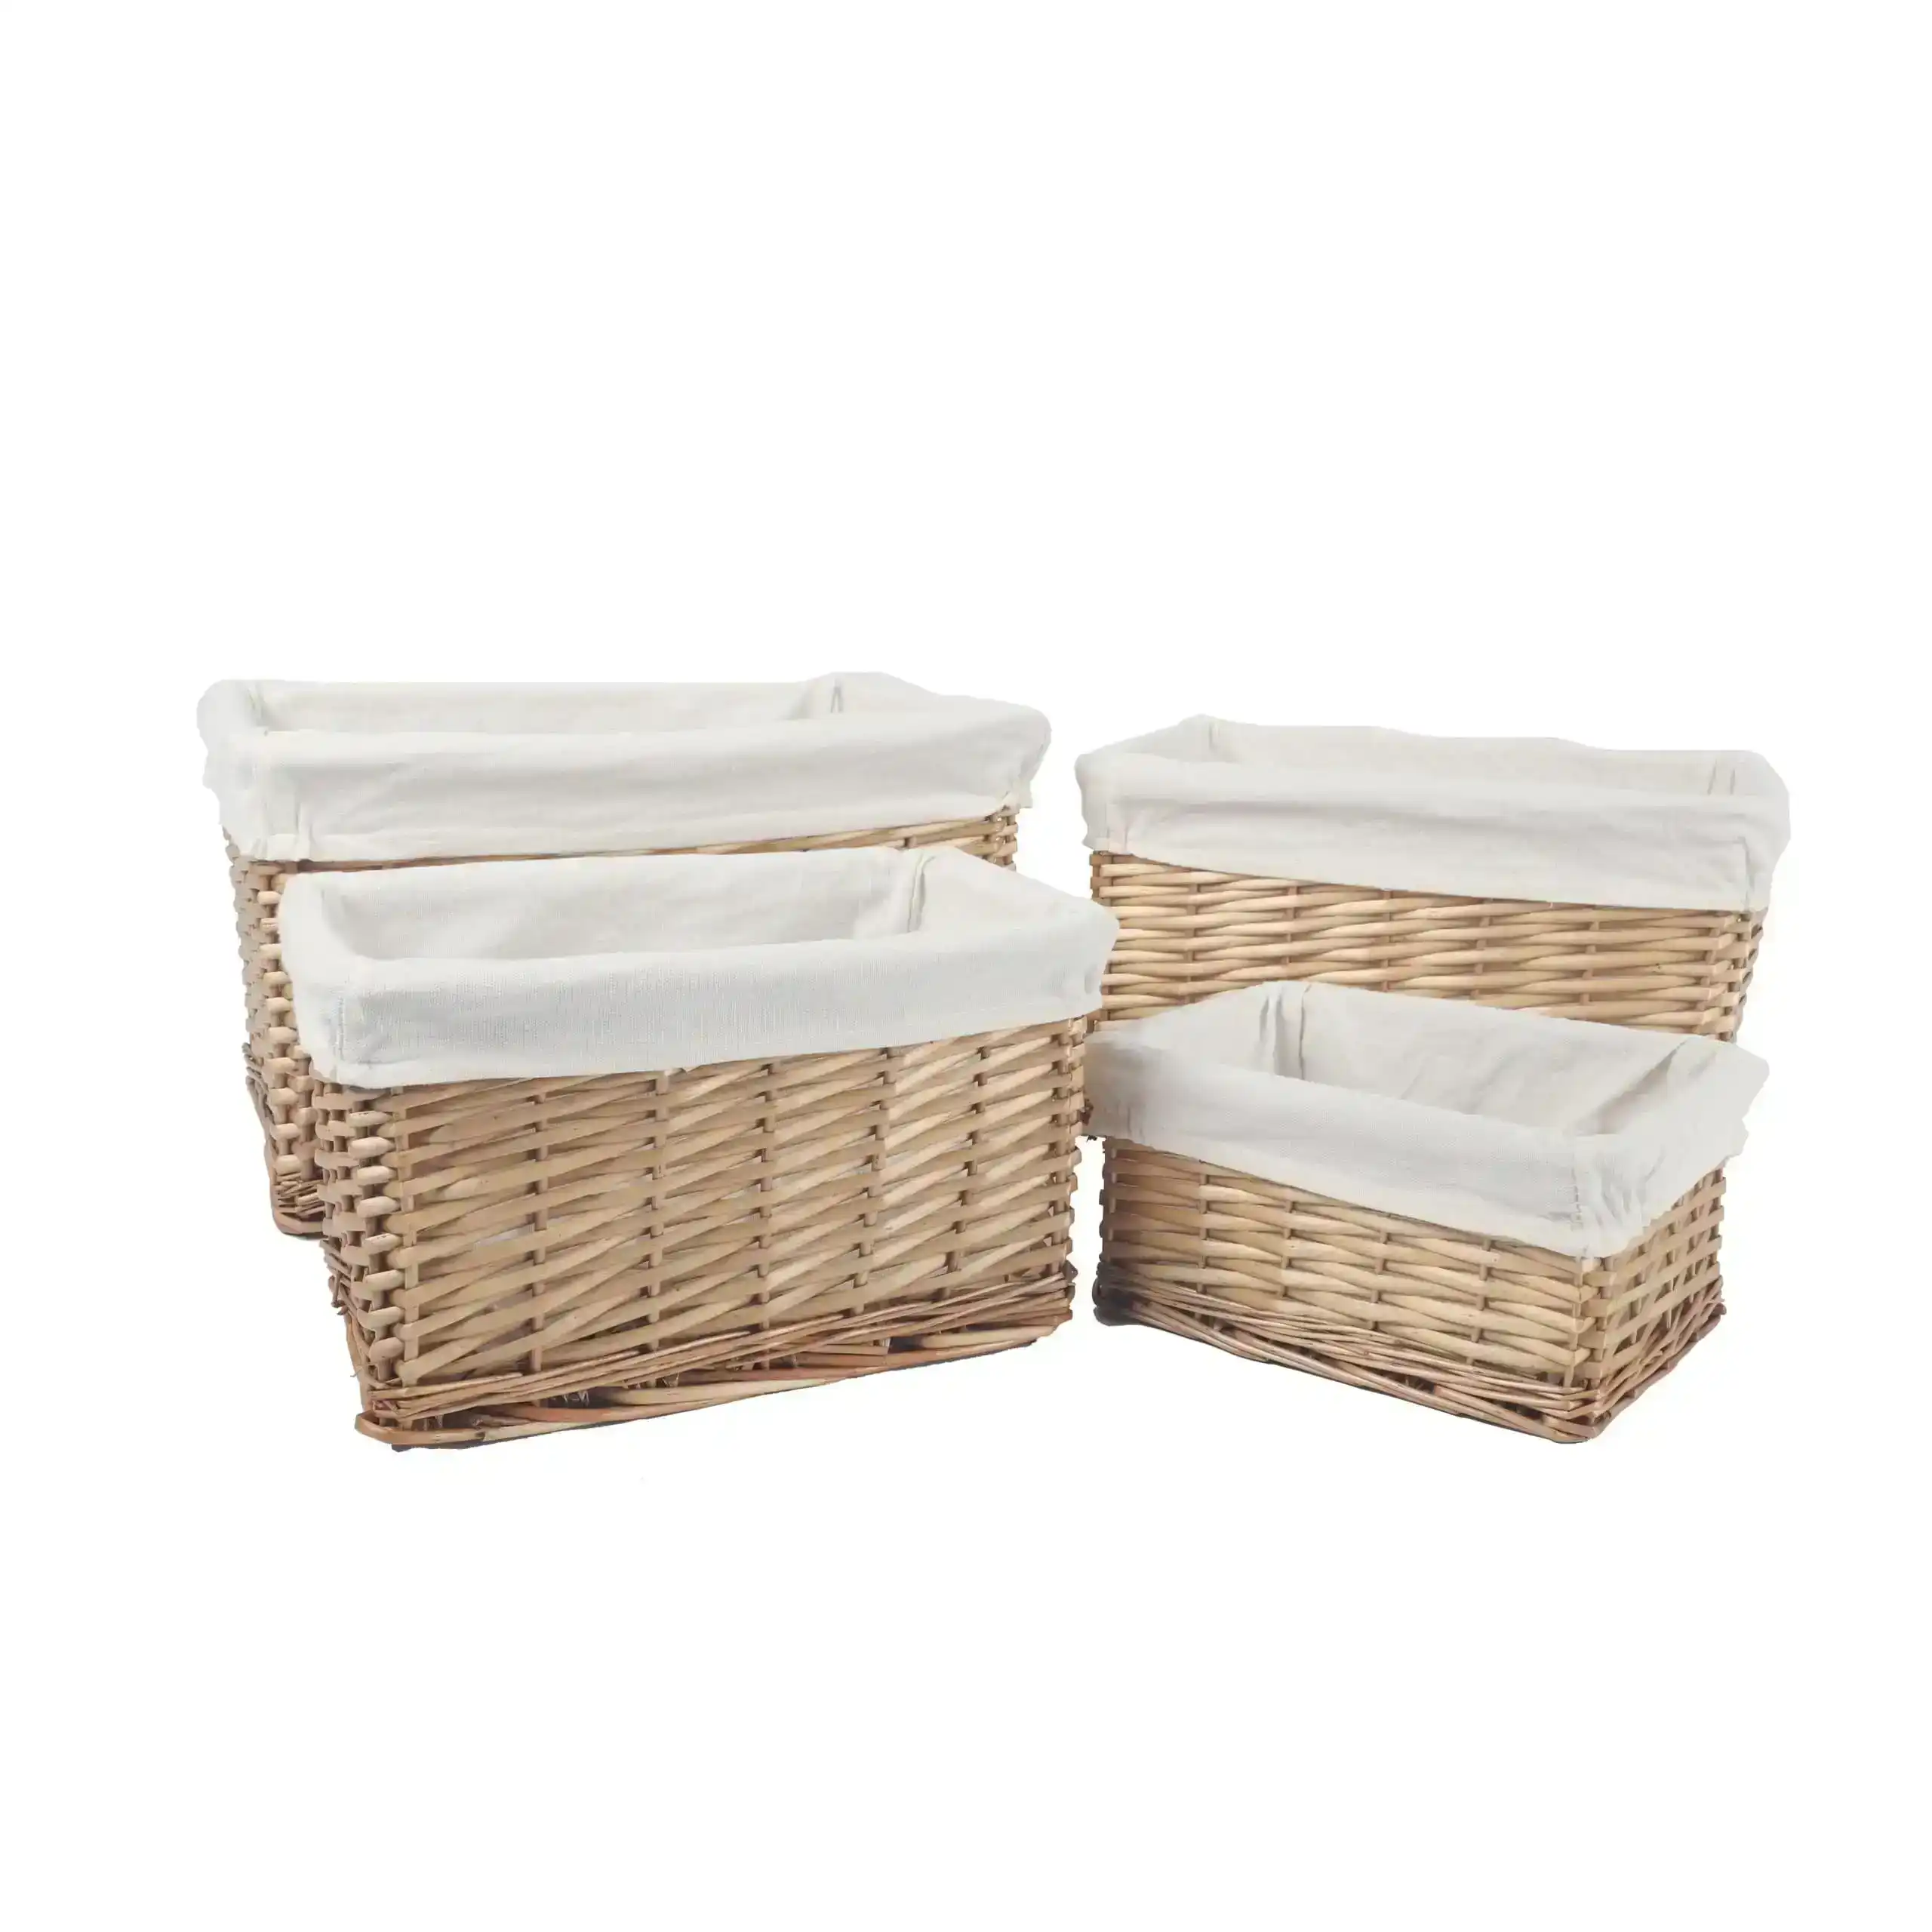 4 Piece Wicker Storage Baskets With Liner Set